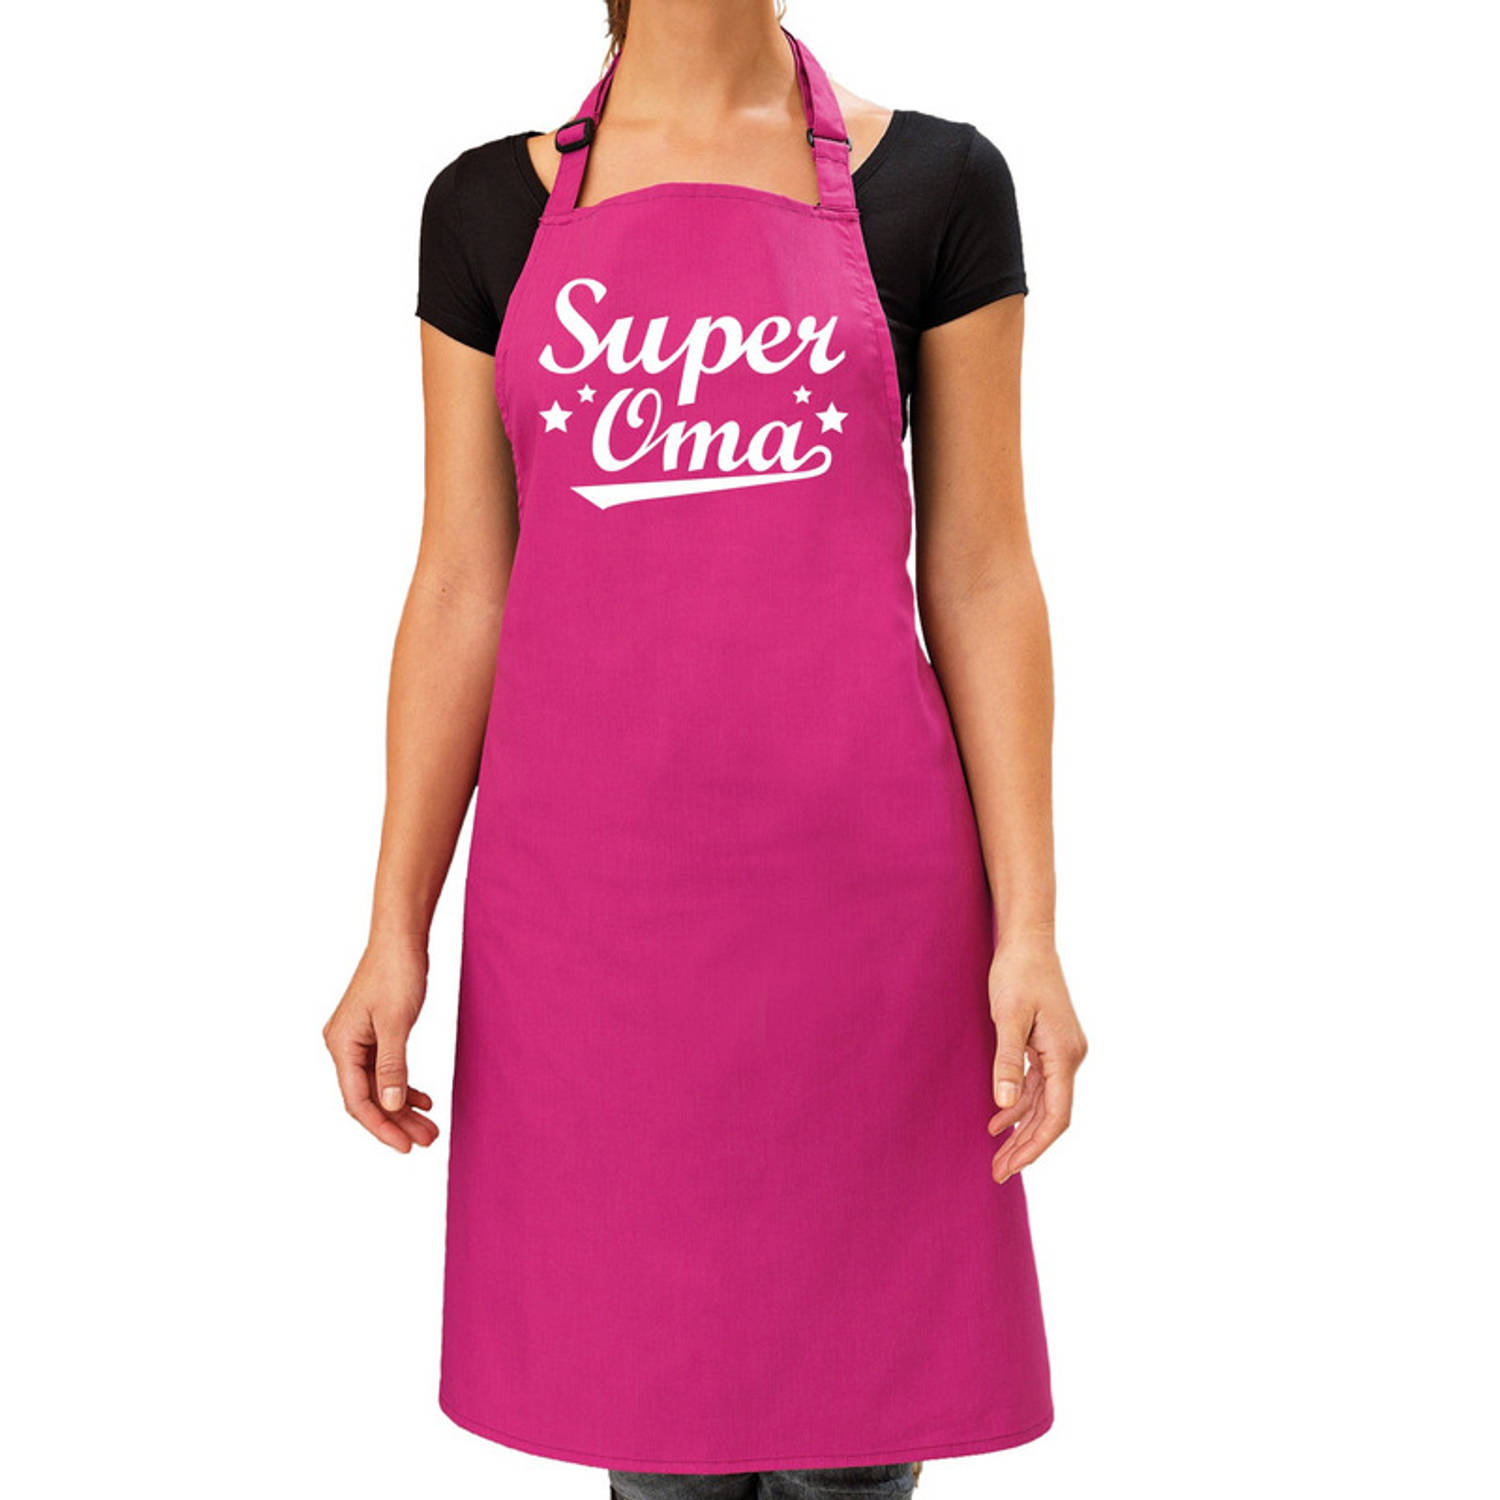 Super oma kado bbq-keuken schort roze voor dames Feestschorten